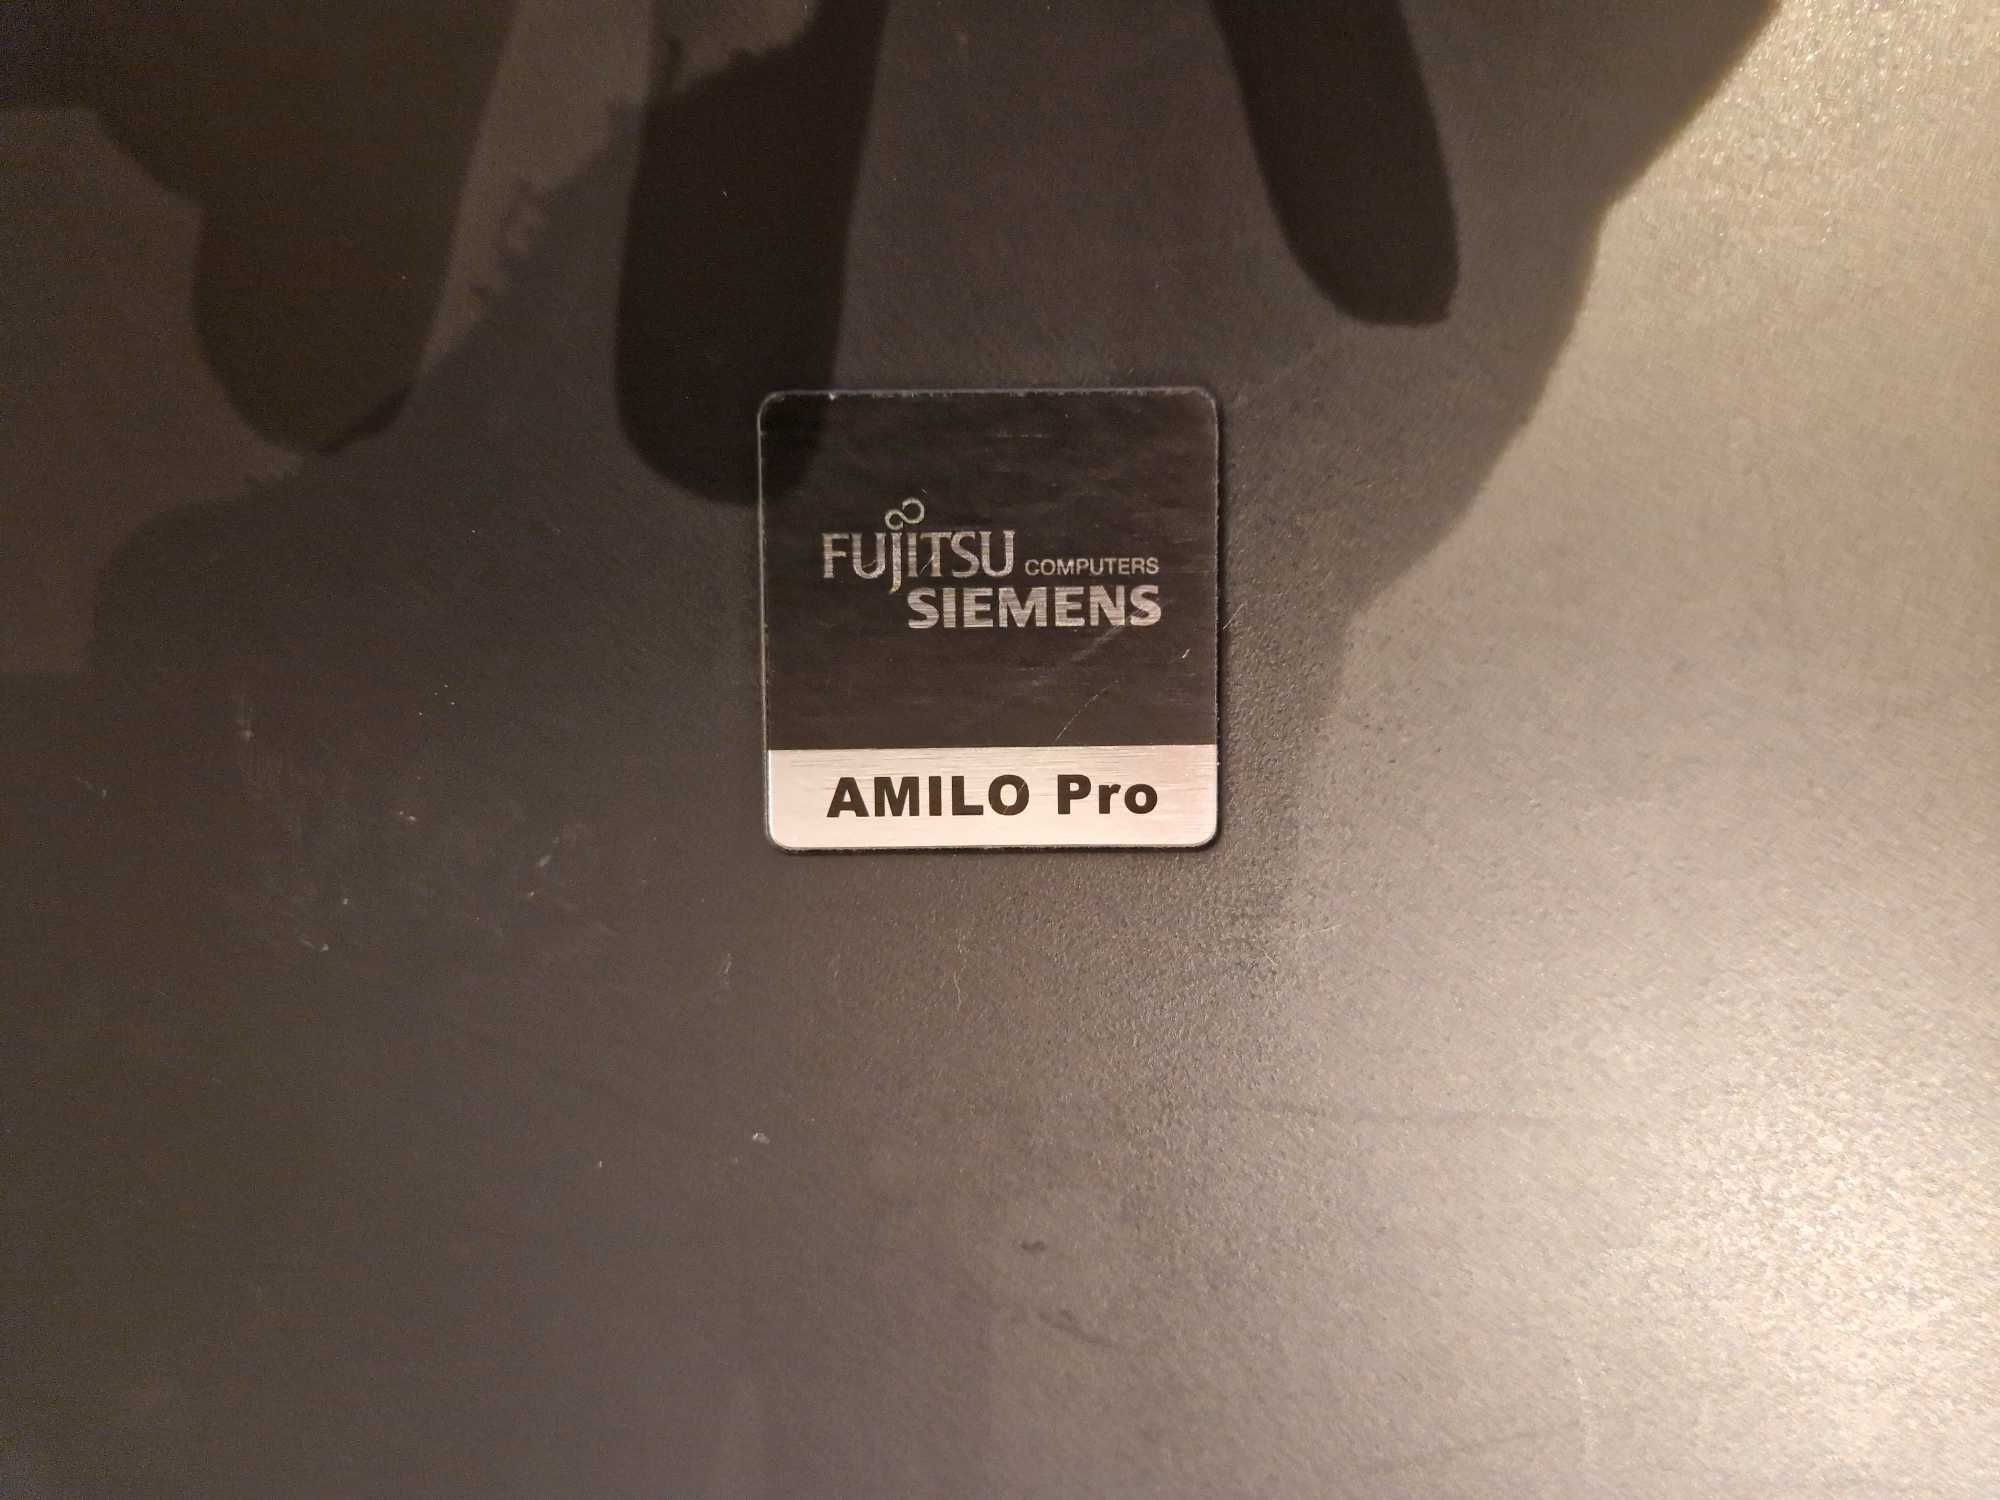 Portátil Fujitsu Siemens AMILO Pro (com defeito)